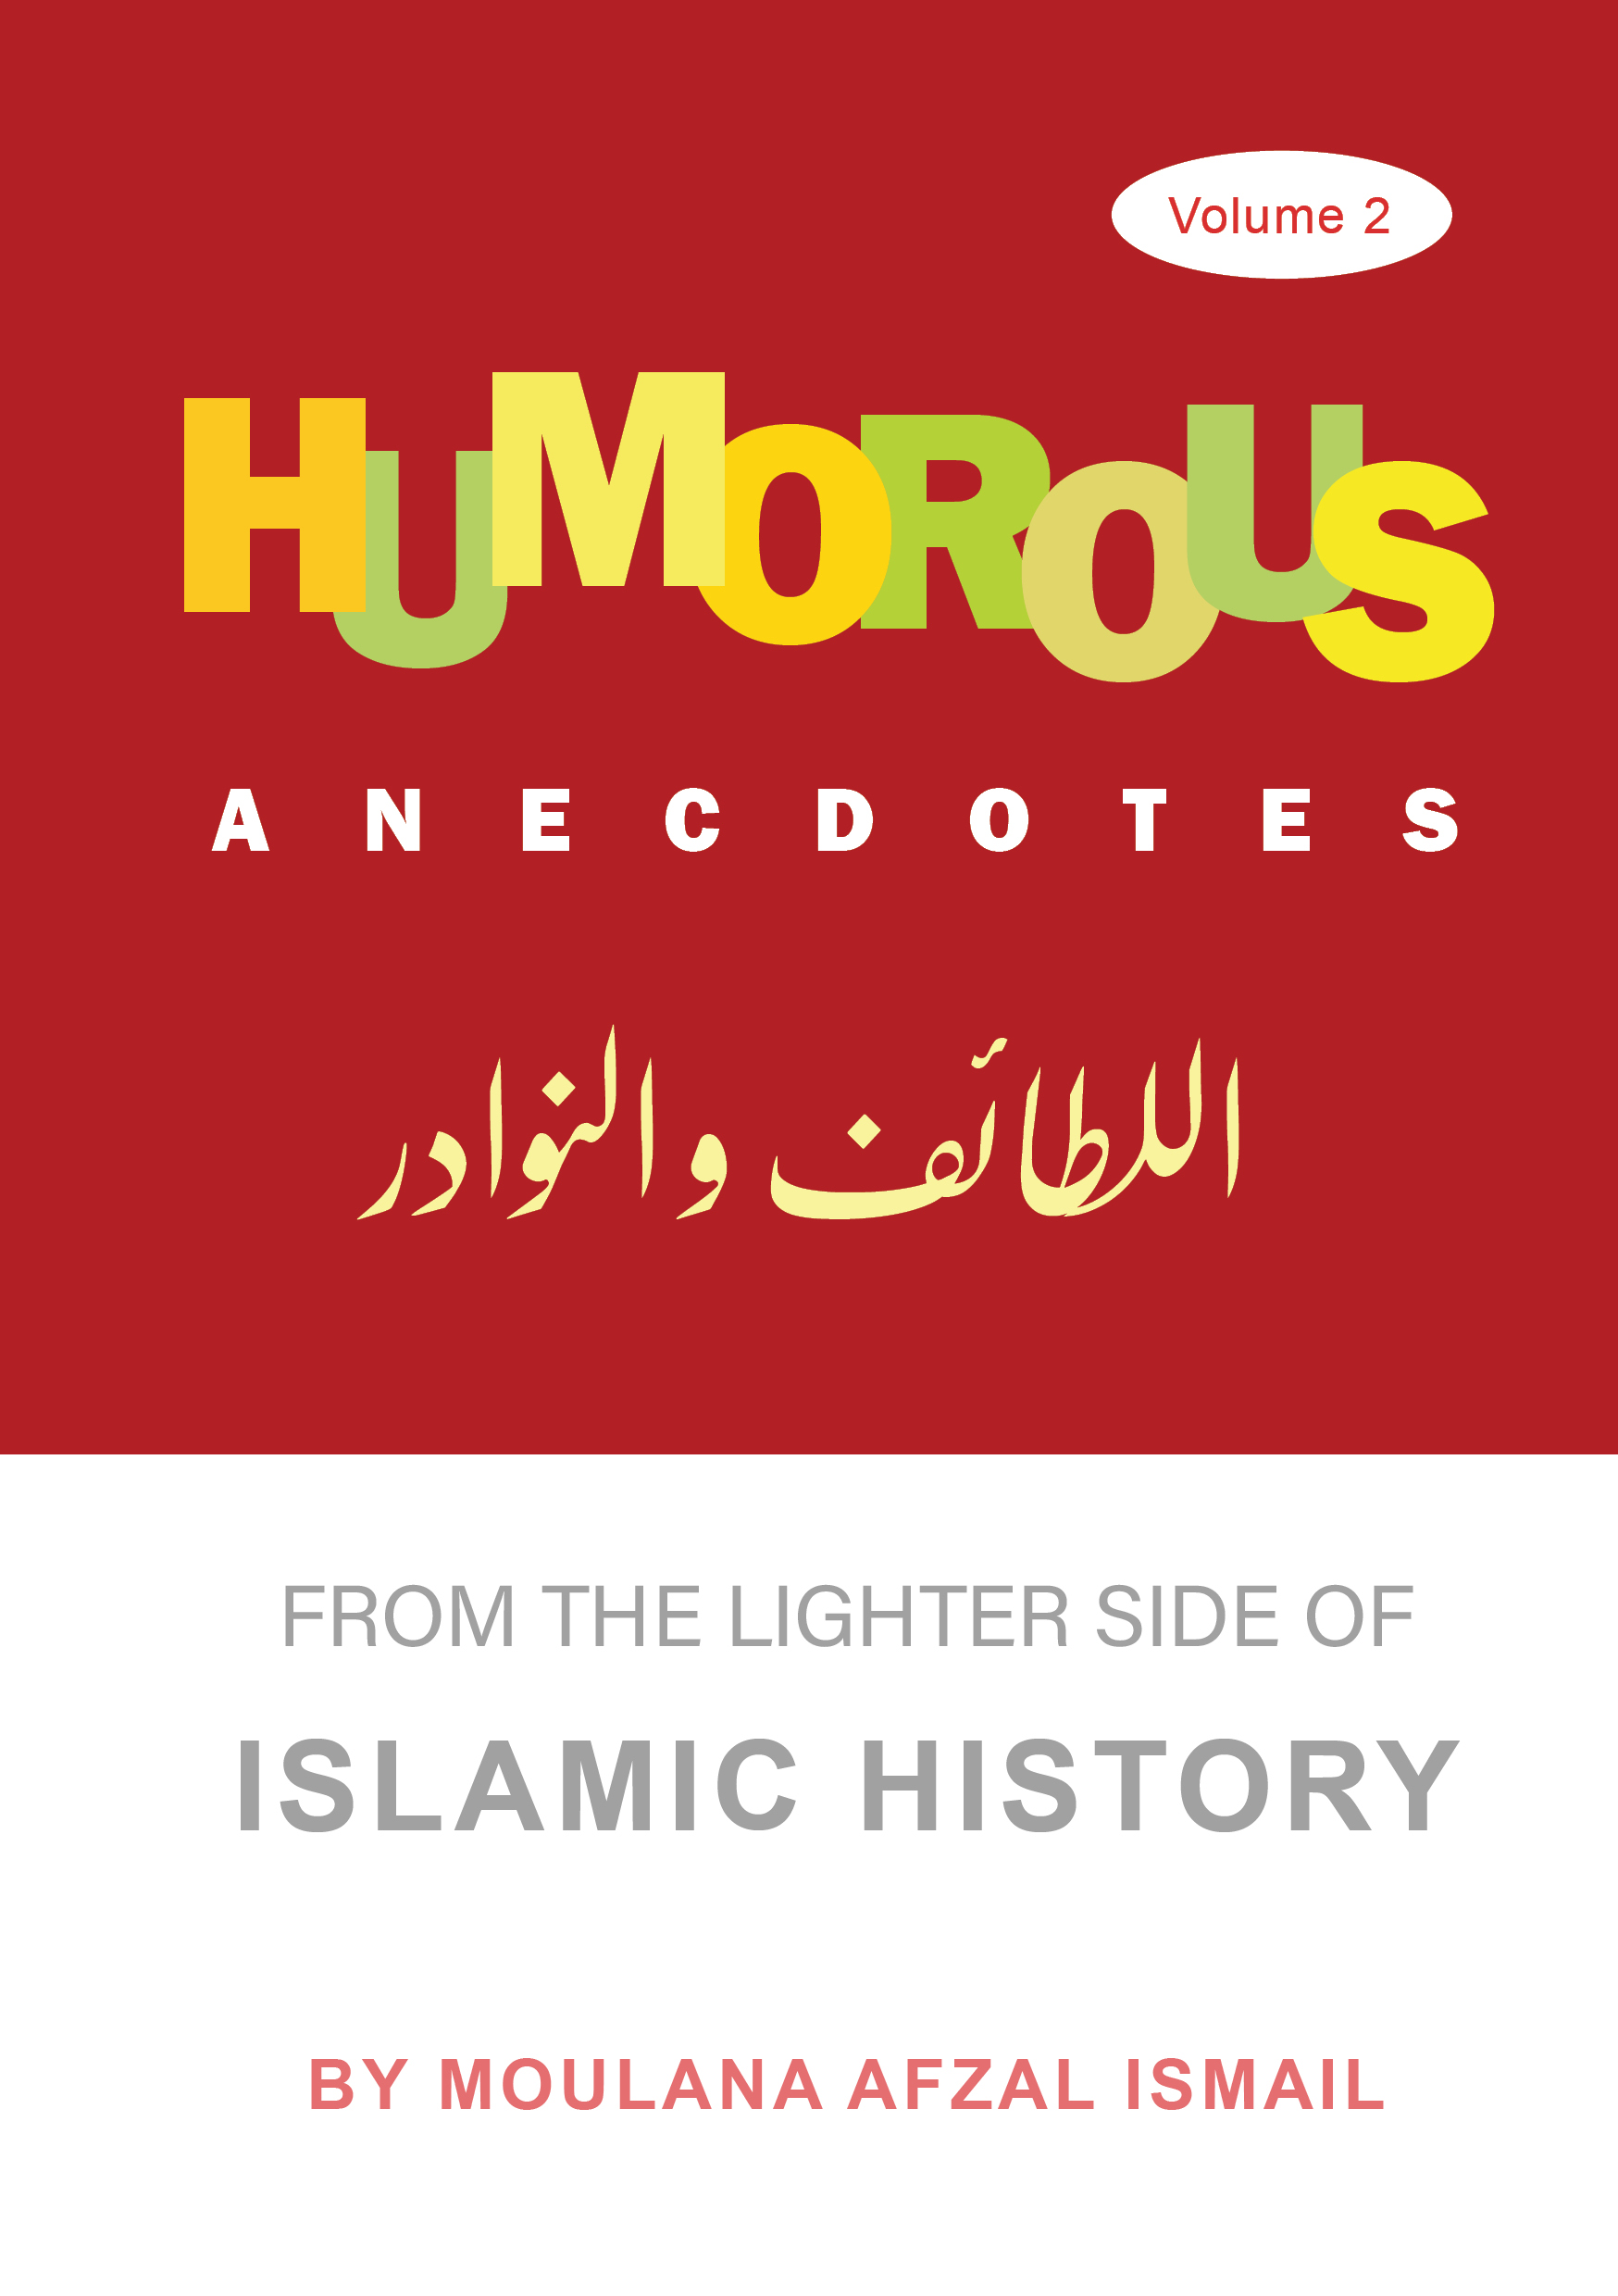 Humorous Anecdotes - 2 volumes